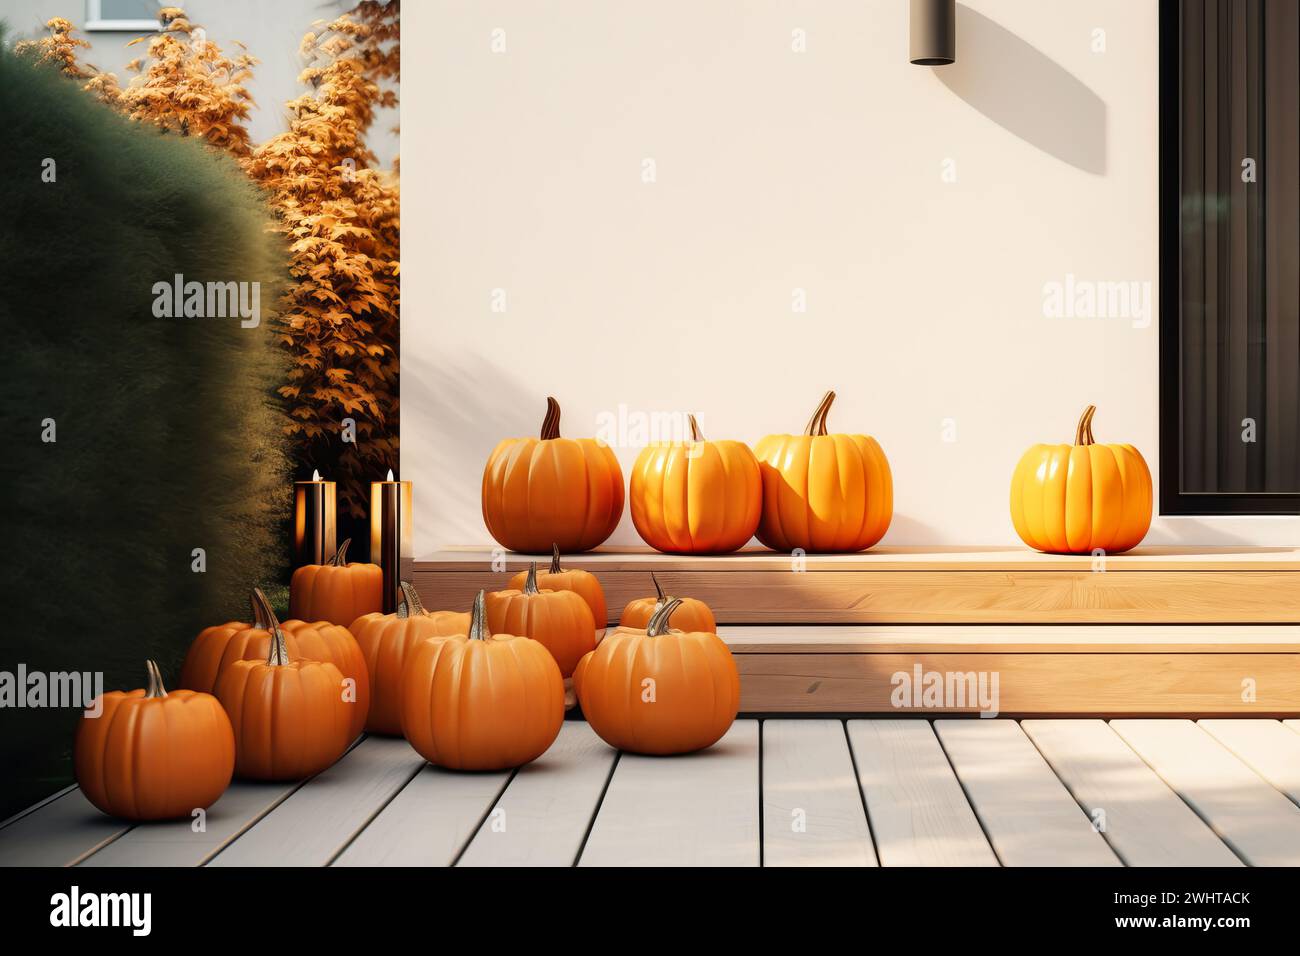 Ingresso alla casa con decorazione di zucche di halloween. Decorazioni in stile minimalista e moderno in autunno Foto Stock